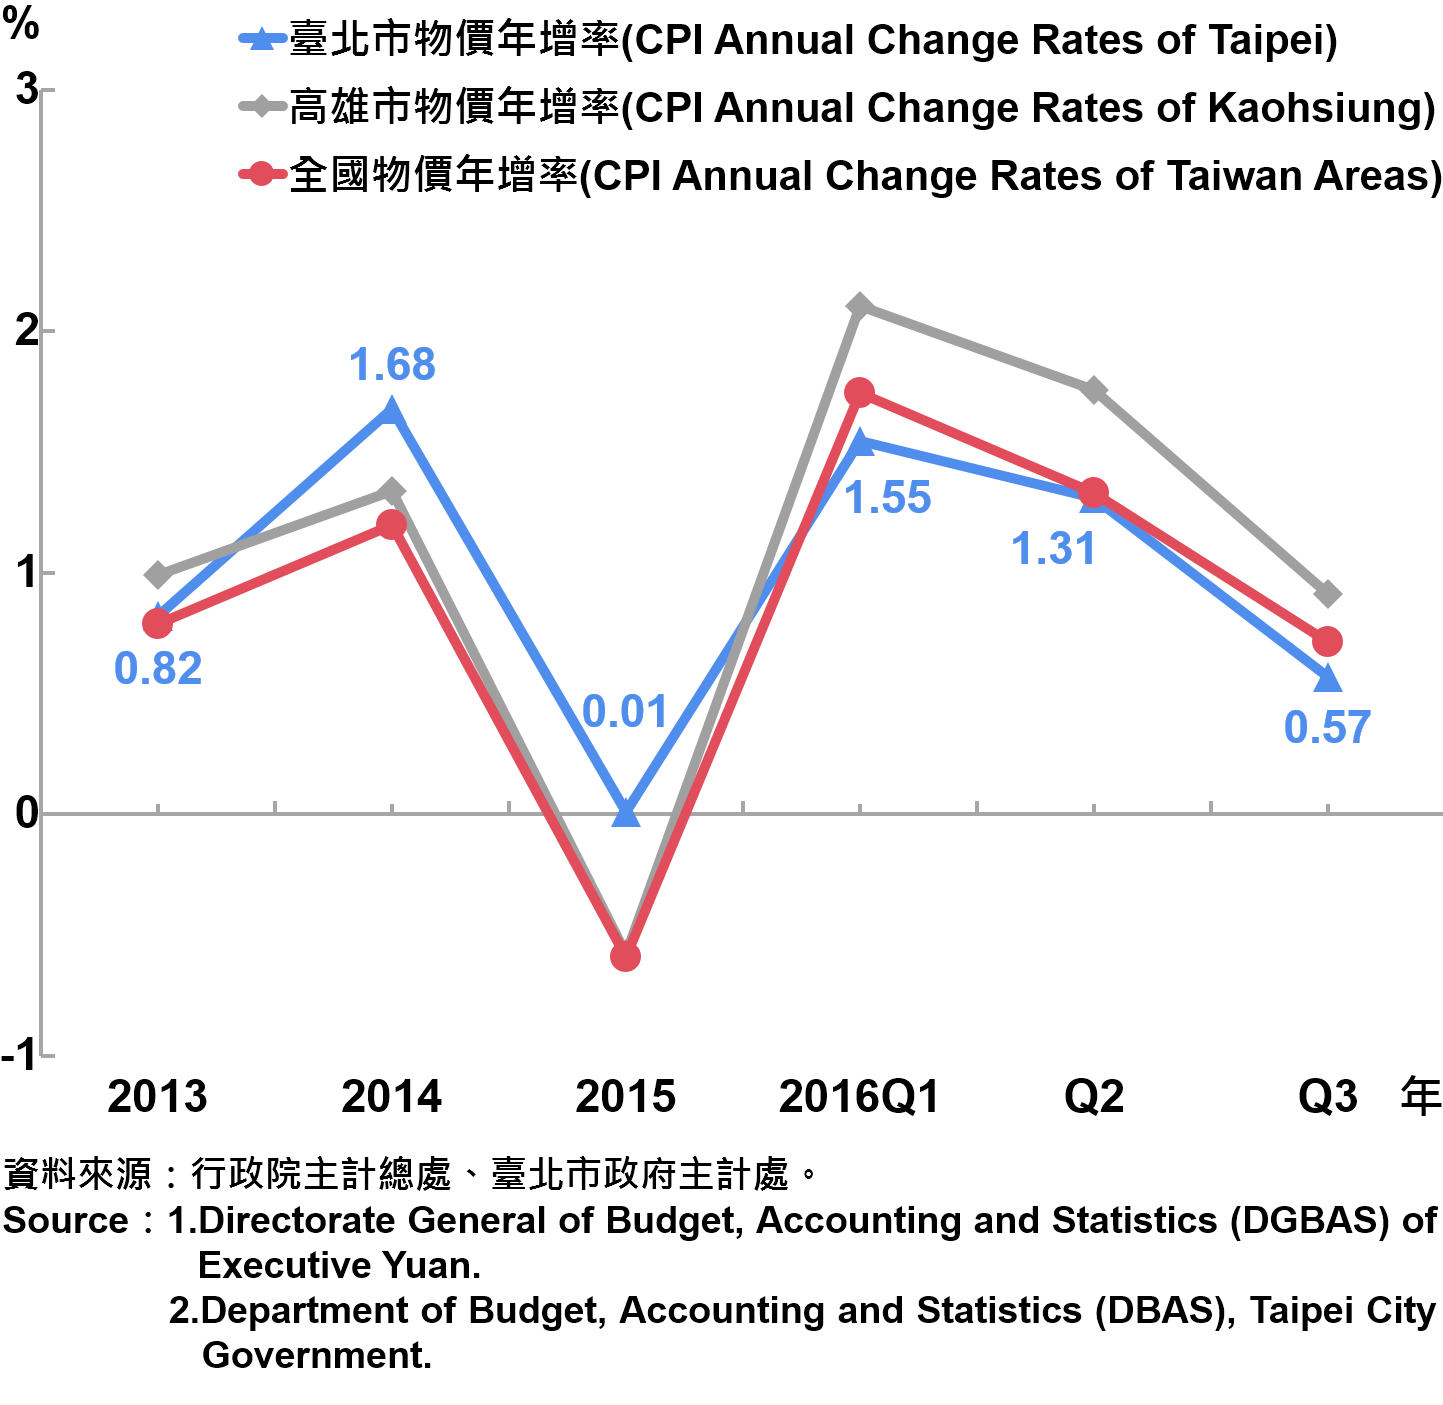 圖1、臺北市消費者物價指數（CPI）年增率—2016Q3 The Changes of CPI in Taipei Area—2016Q3